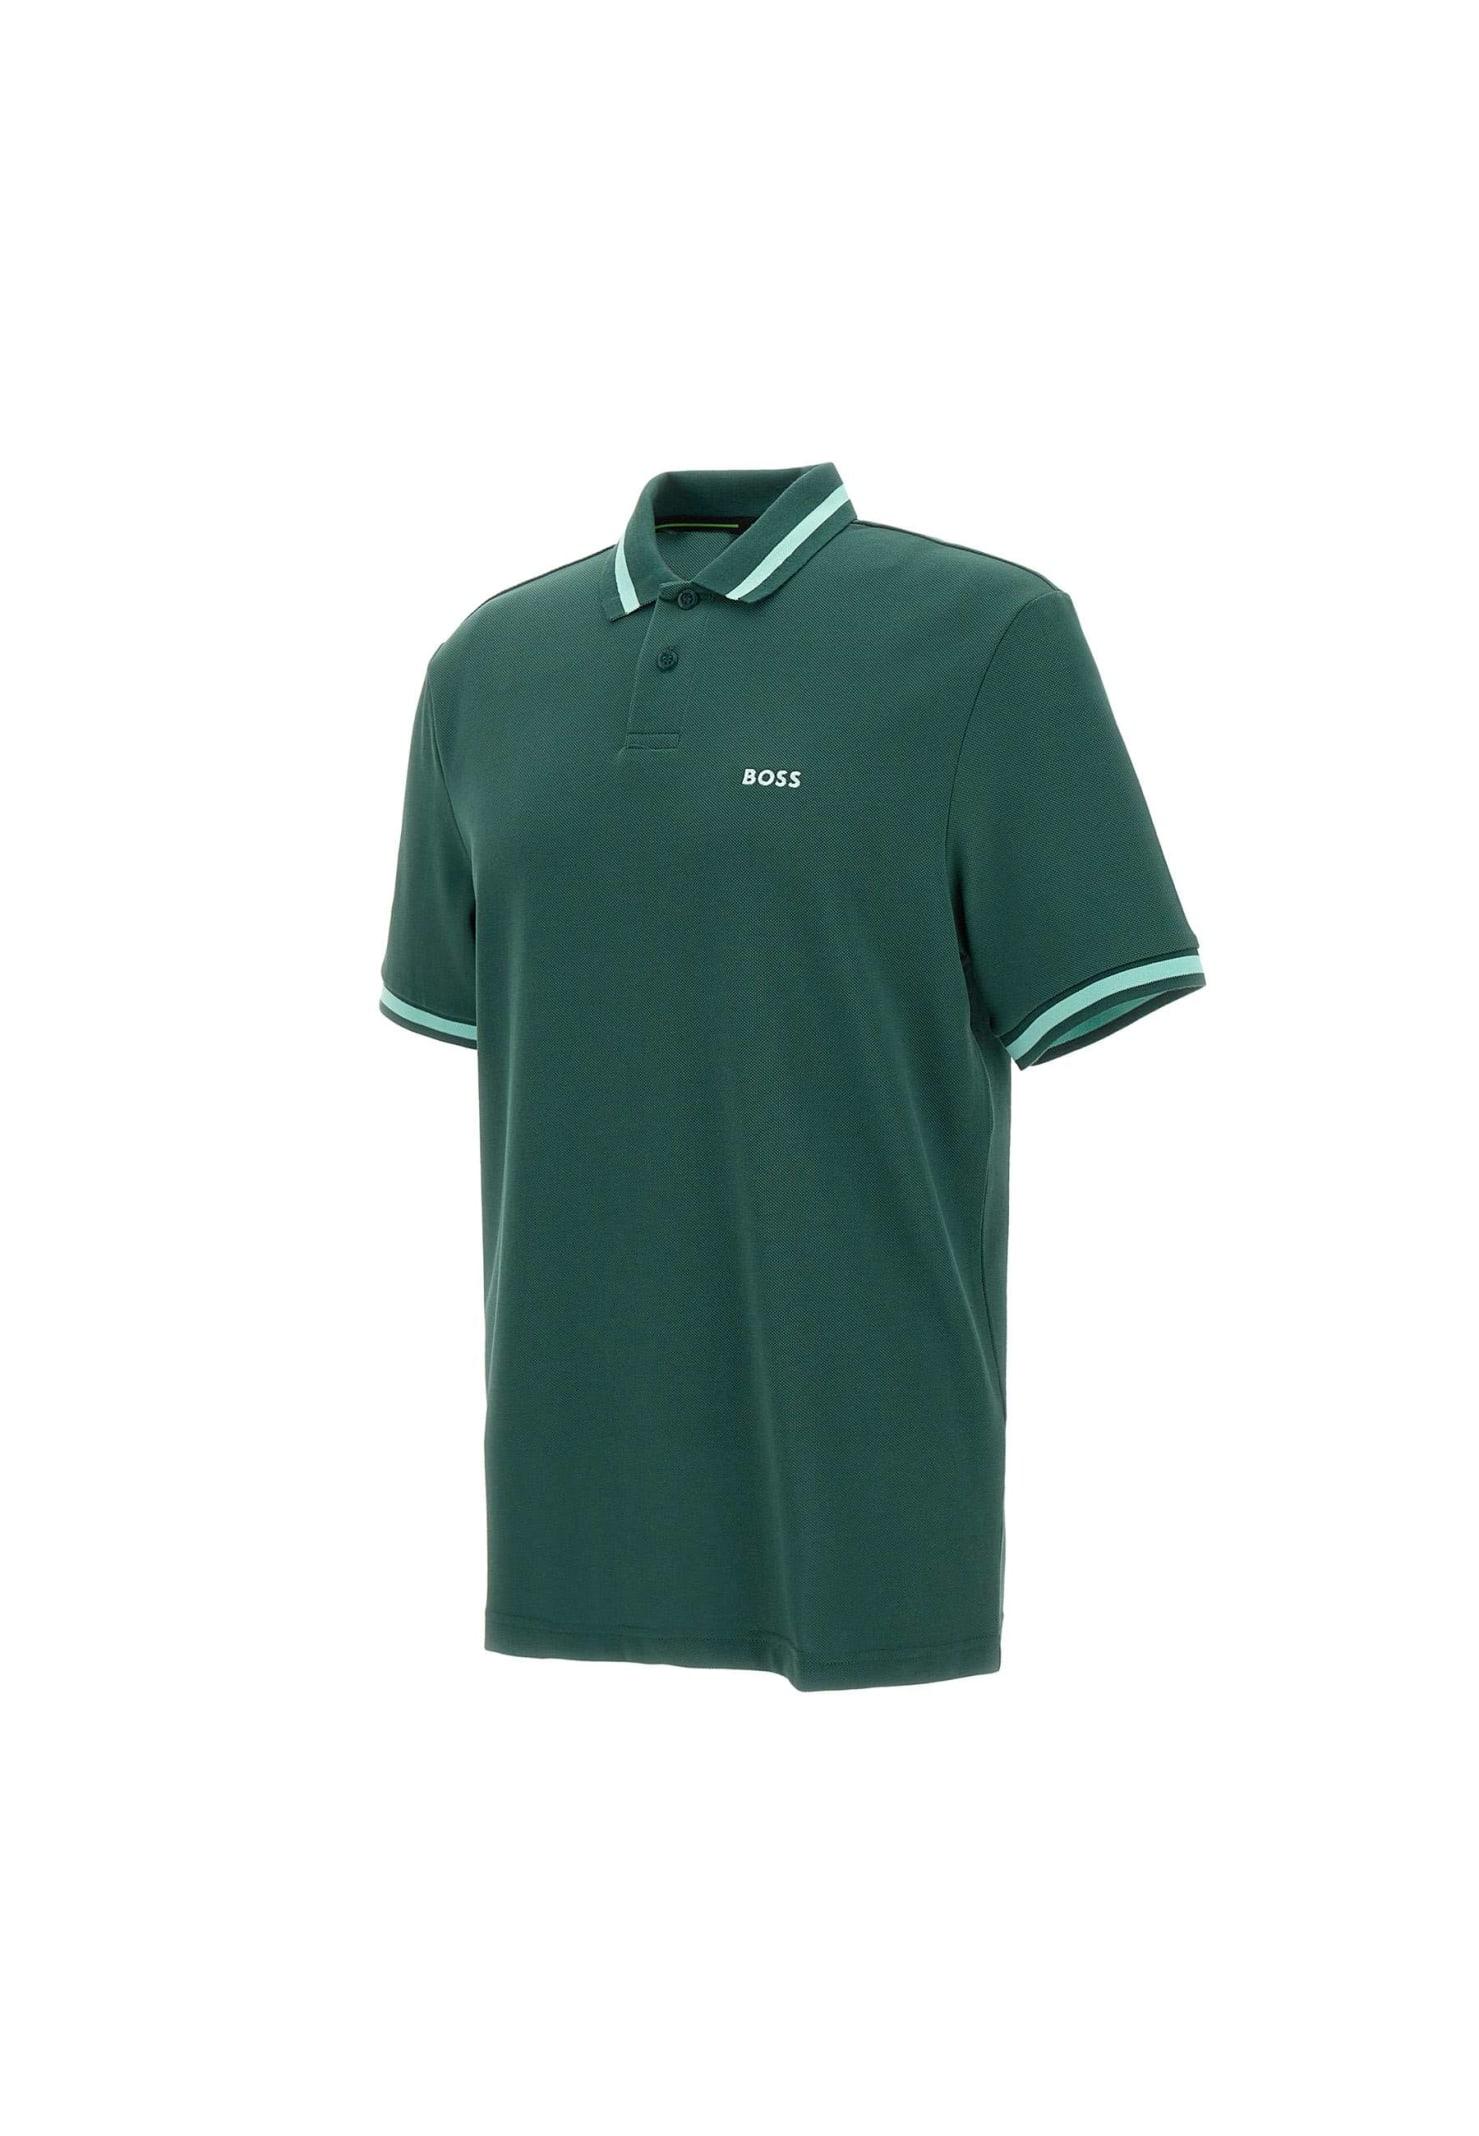 BOSS by HUGO BOSS Men's Green Boss Cotton Polo Shirt